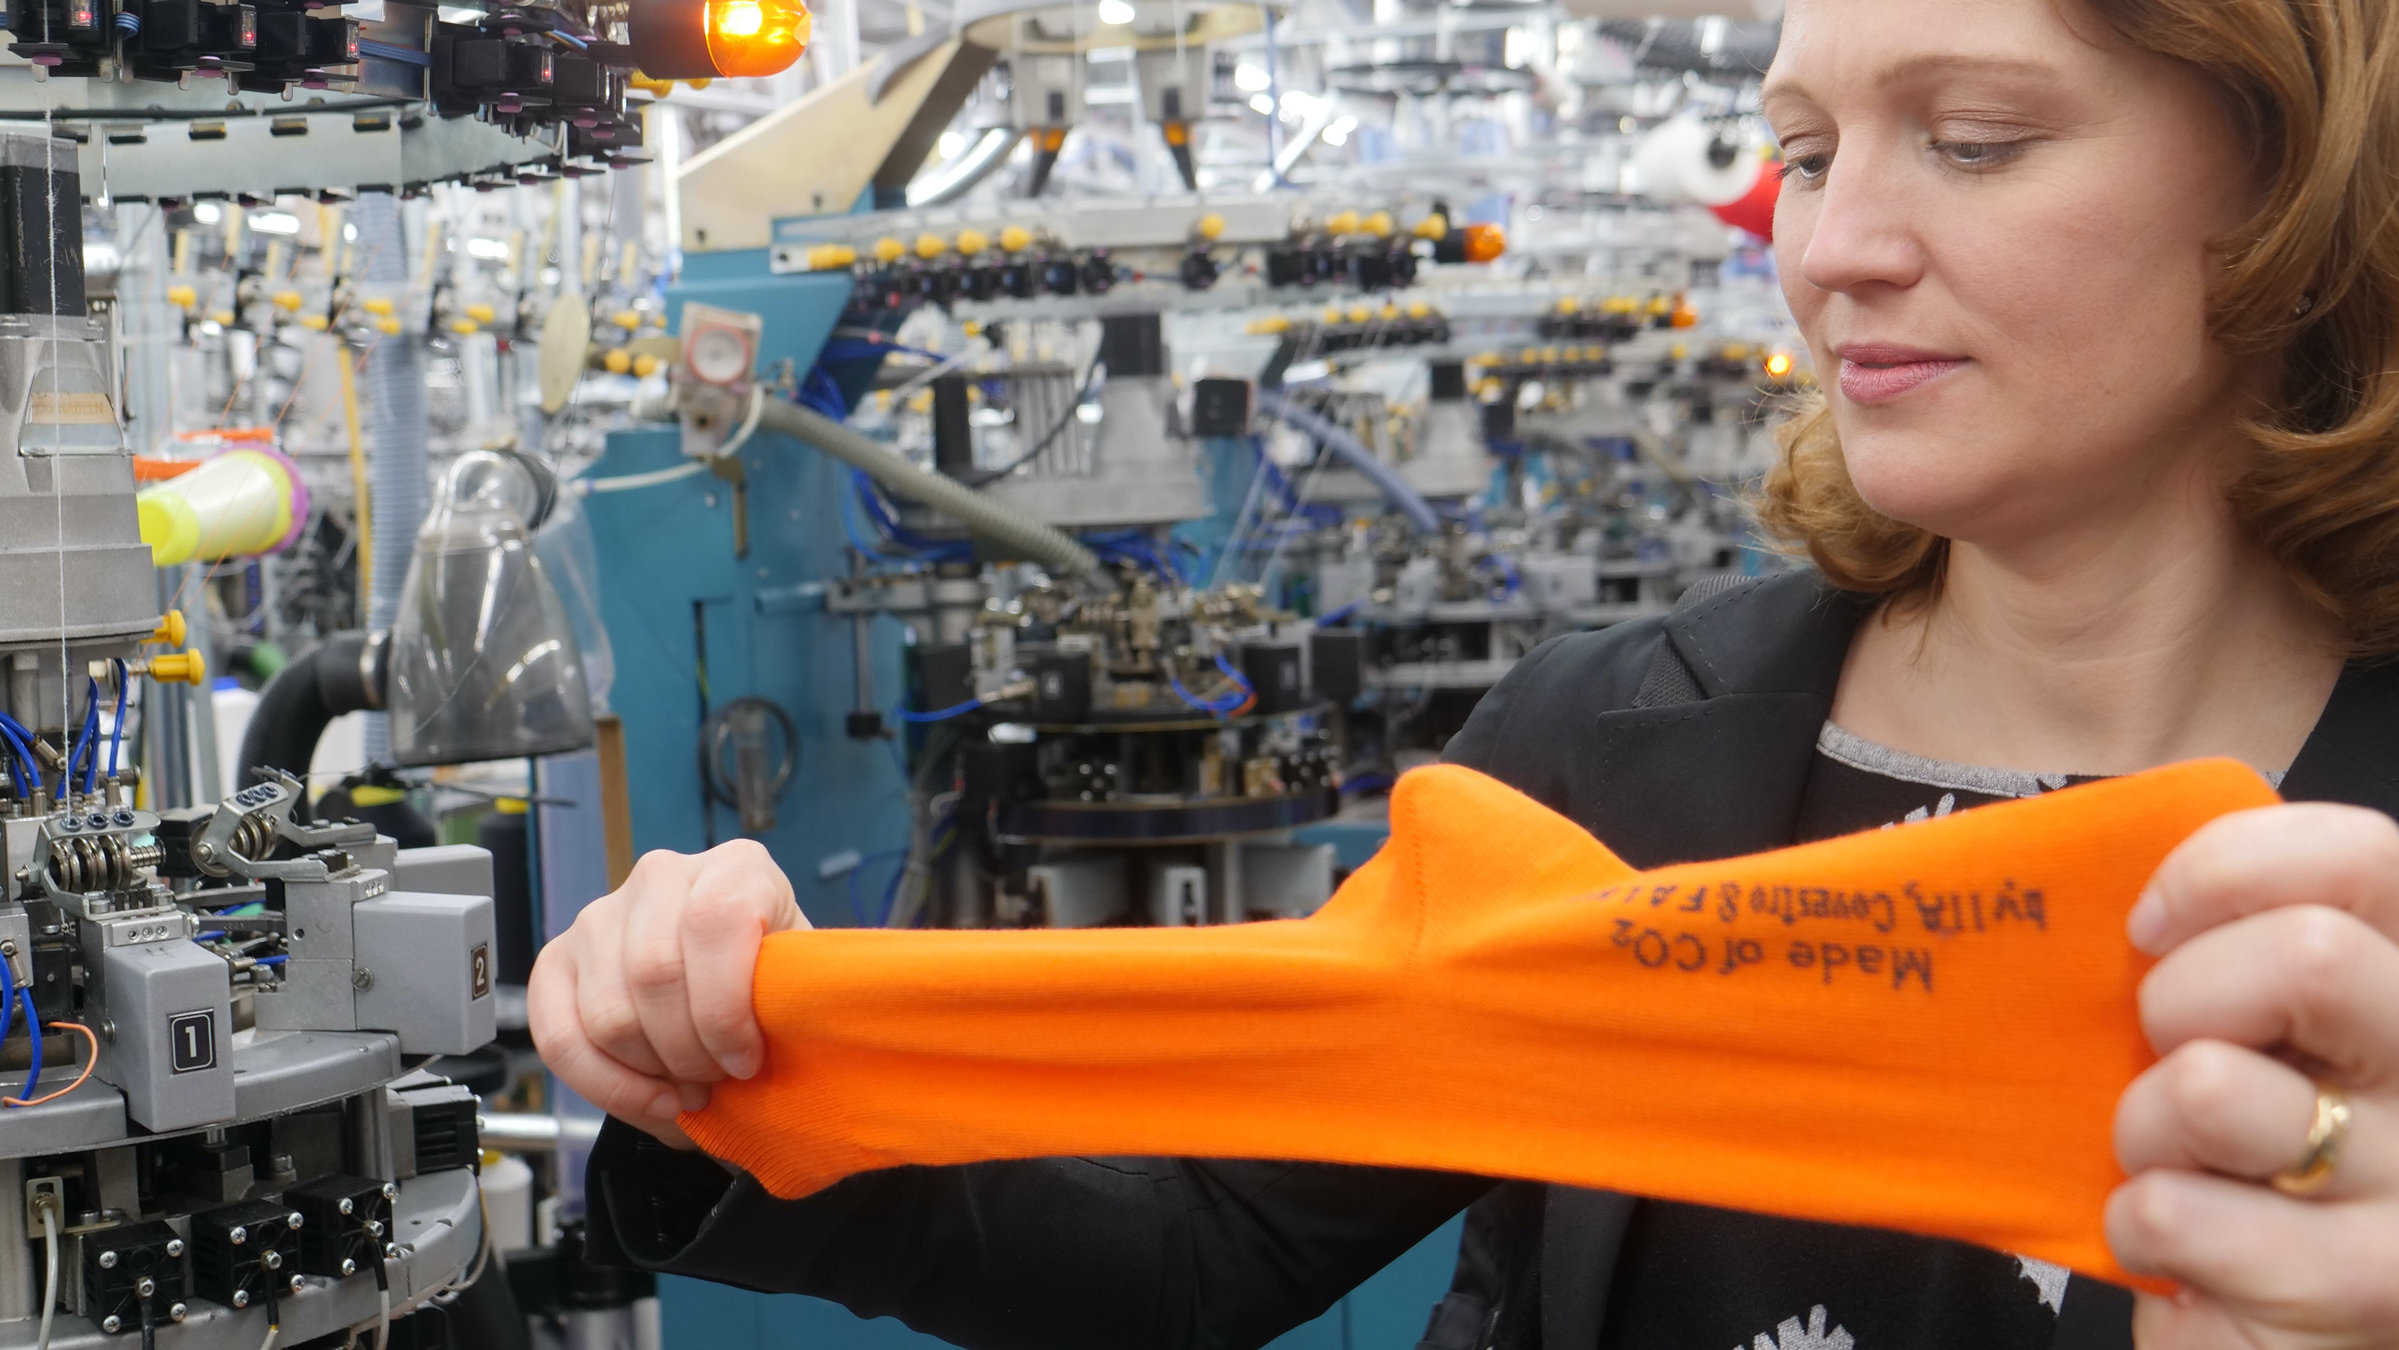 "plan b: Socken aus CO2 - Wie ein Klimakiller nützlich werden kann": Eine Frau steht neben Maschinen und zieht an einer orangefarbenen Socke.